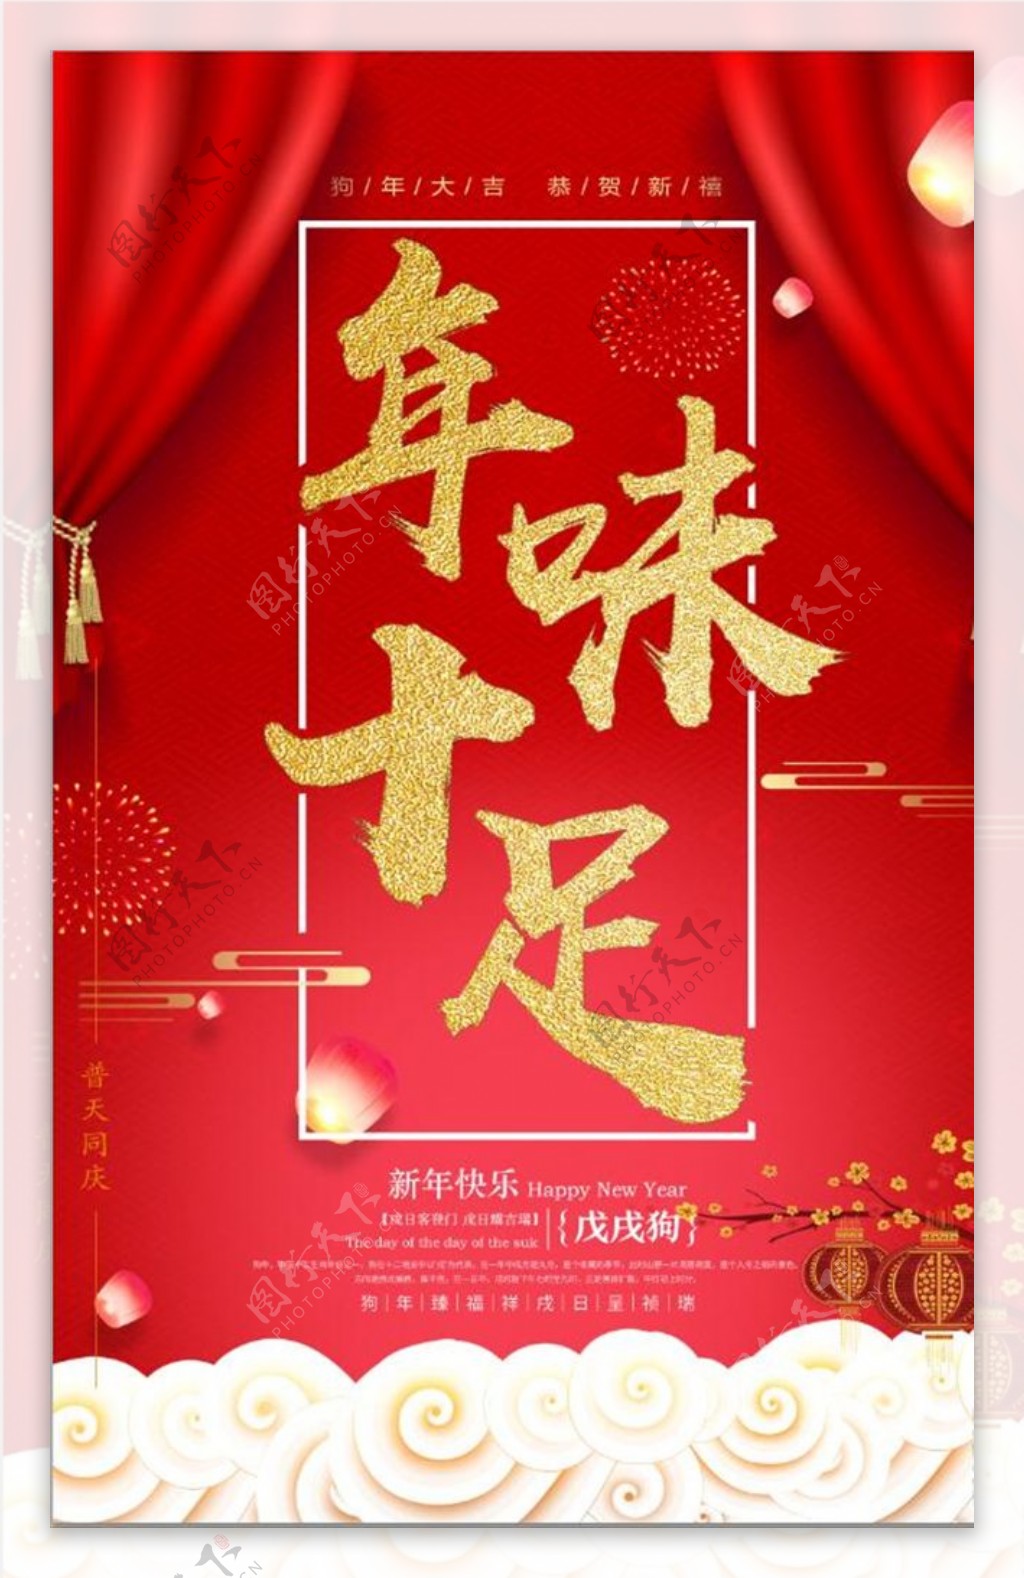 中国风年味食足年夜饭美食海报